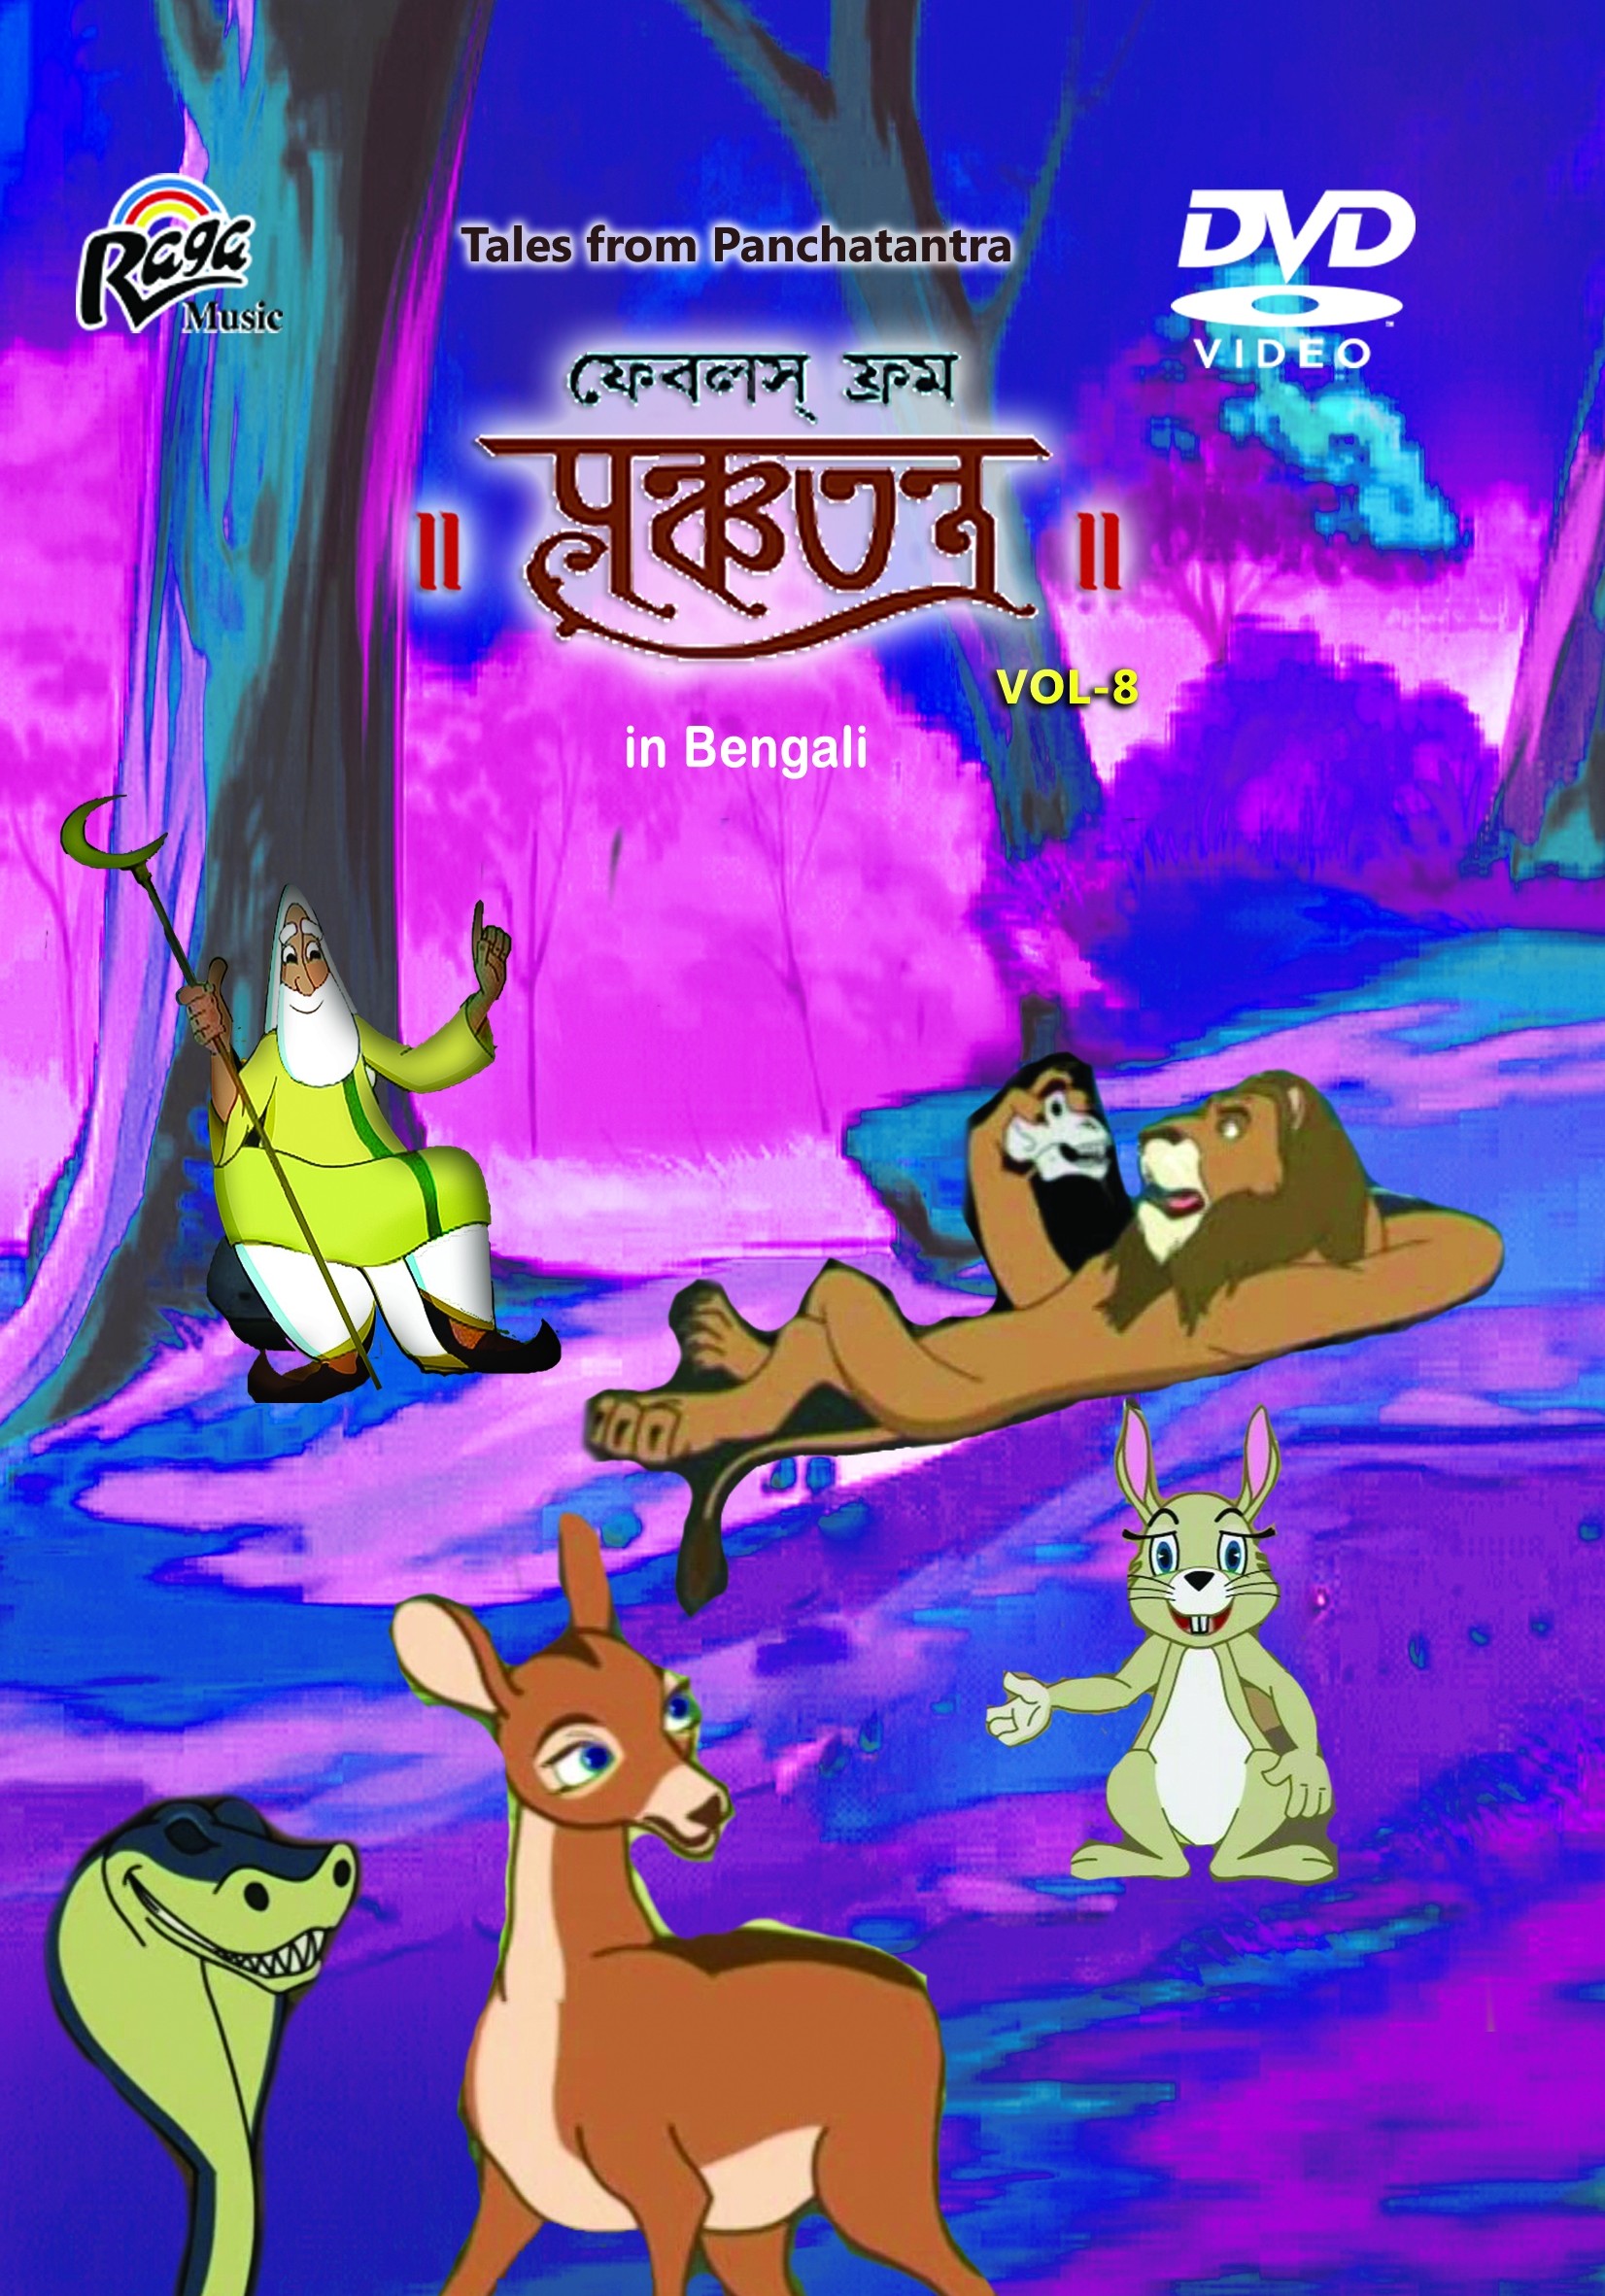 RDVD13913 Panchatantra Vol 8 ( Bengali)